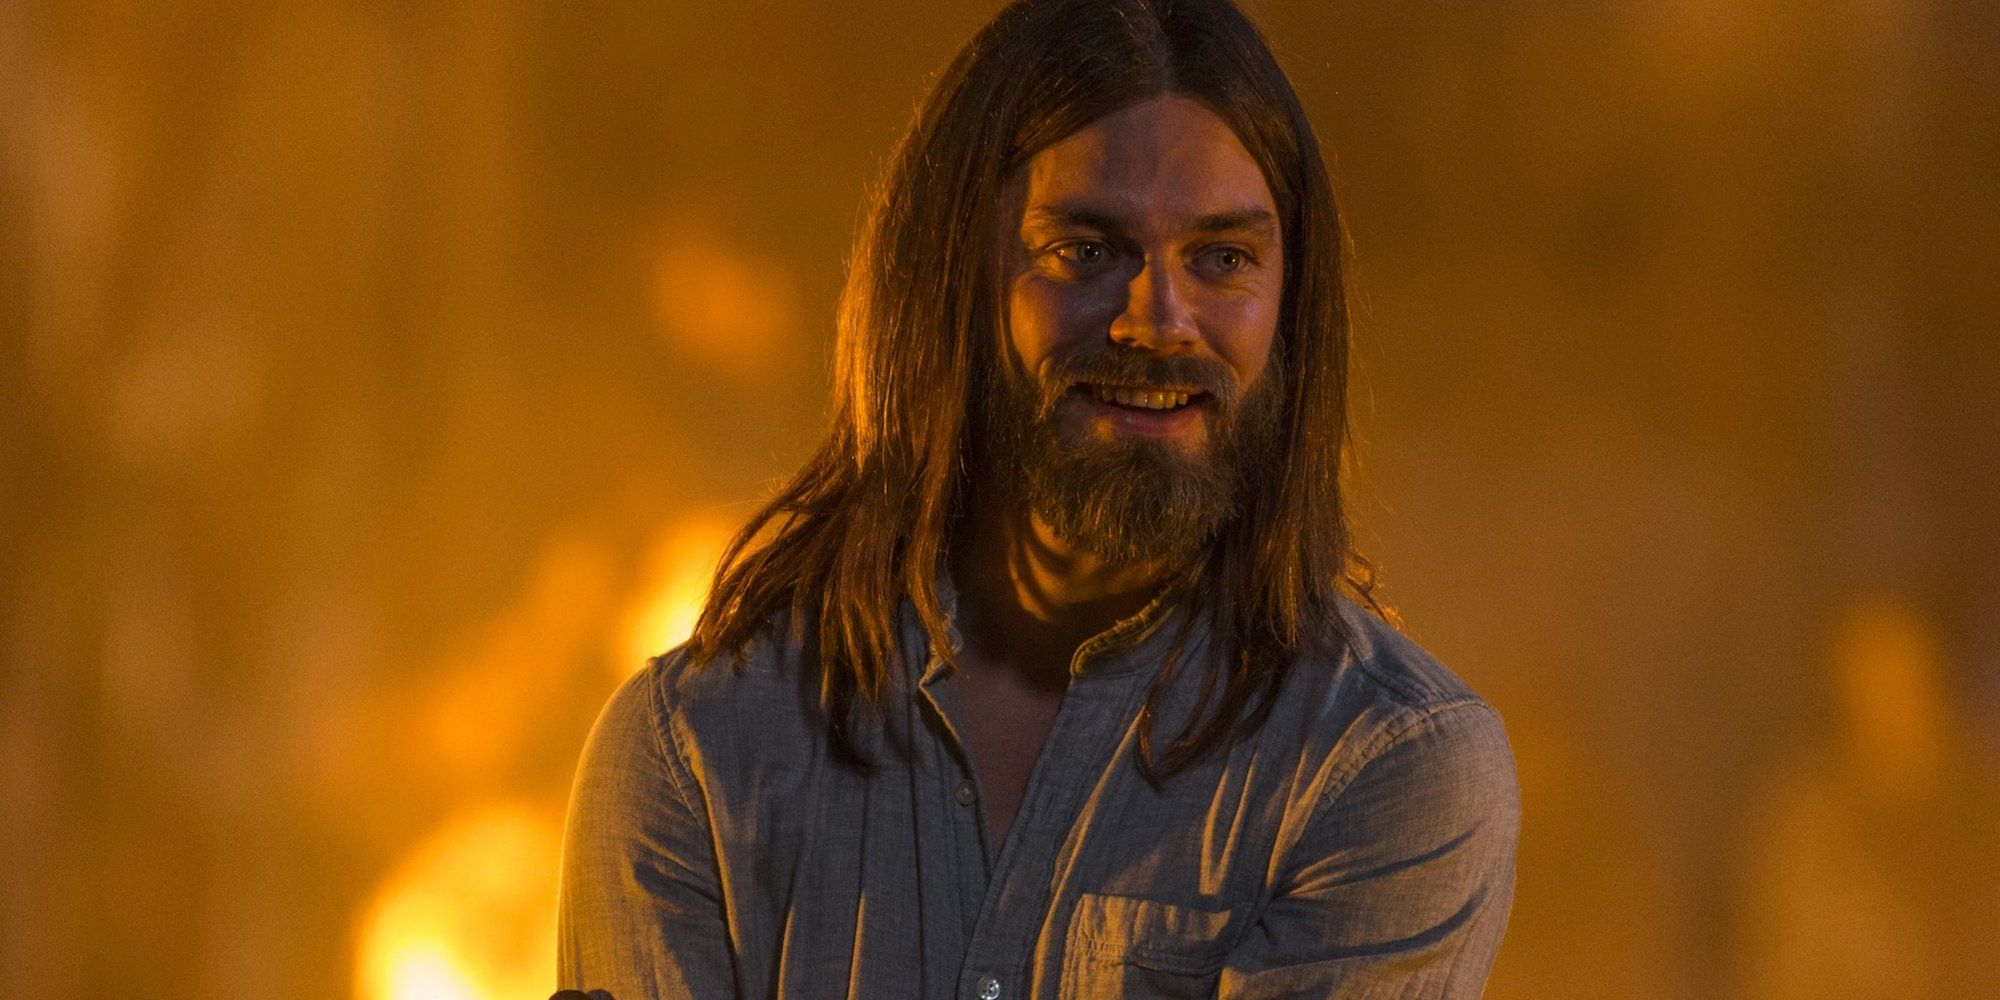 Tom Payne as Jesus in The Walking Dead